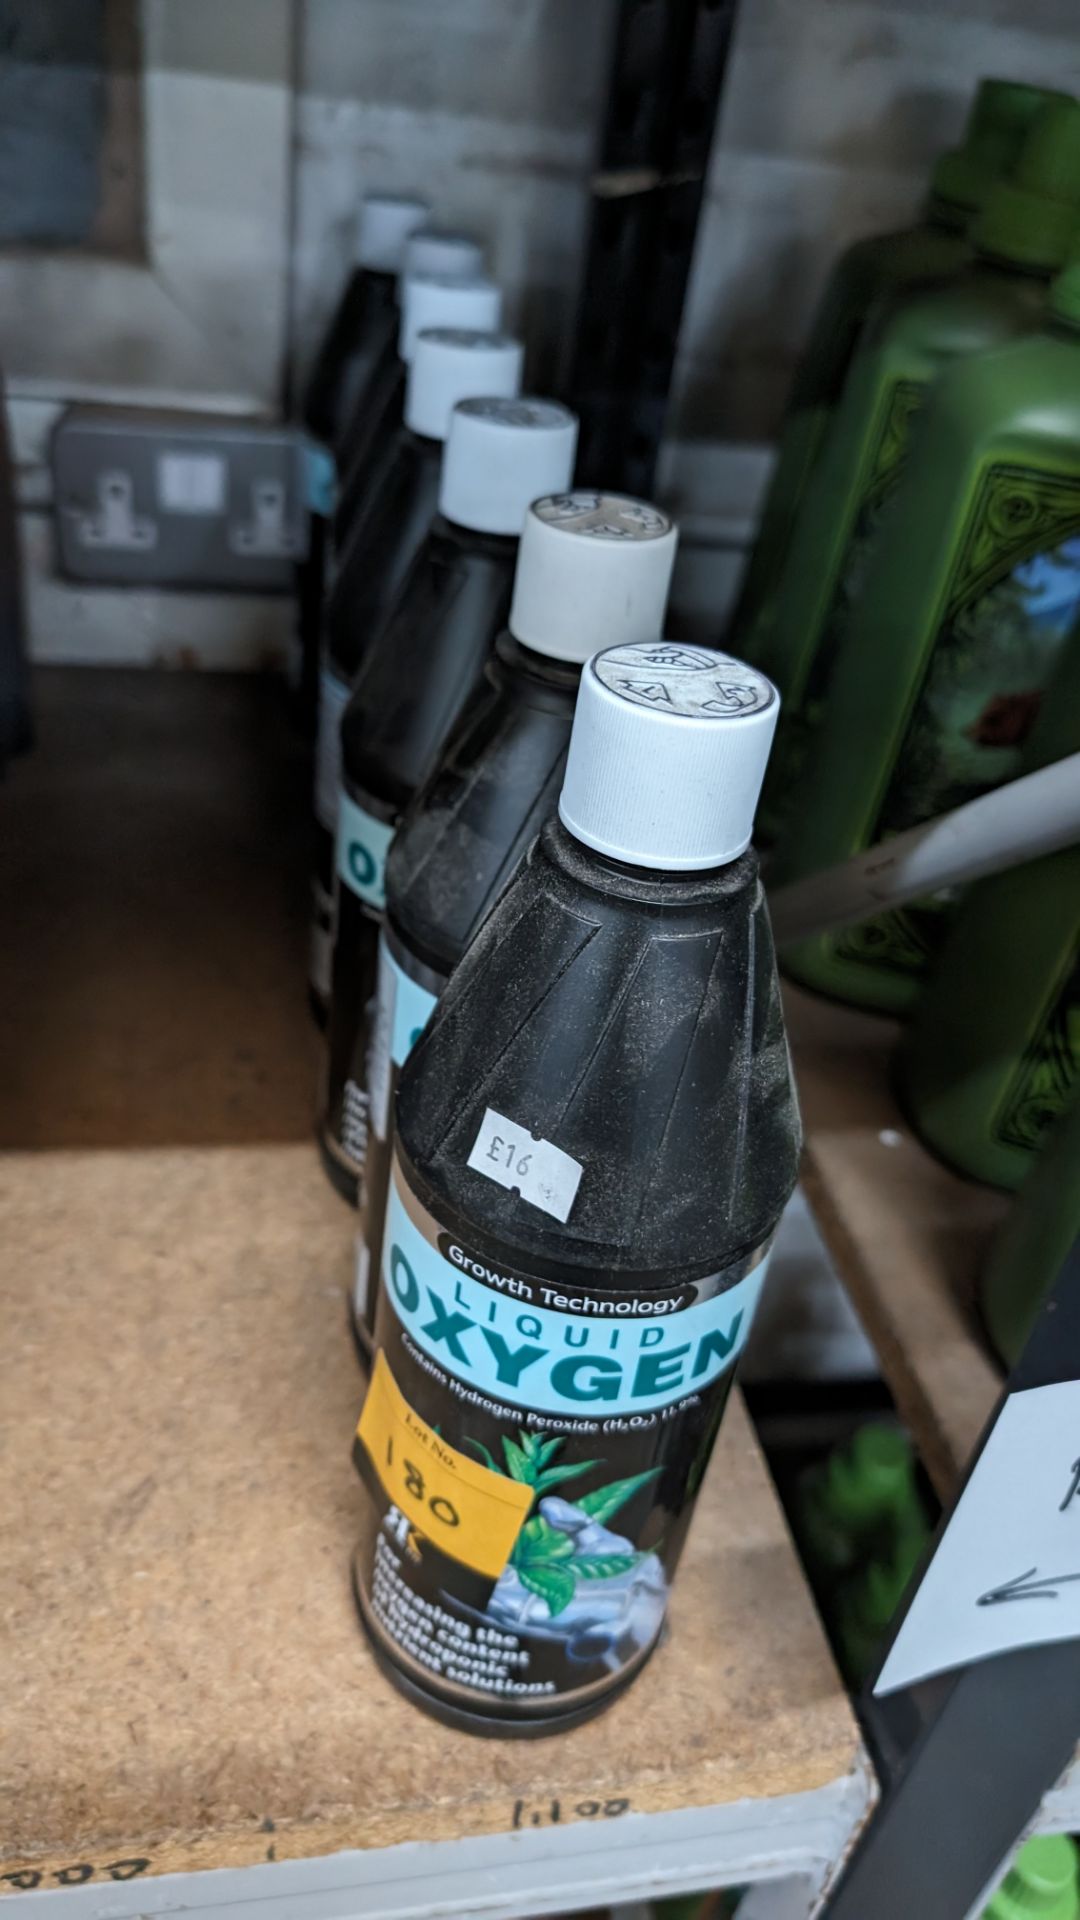 7 off 1 litre bottles of Growth Technology liquid oxygen